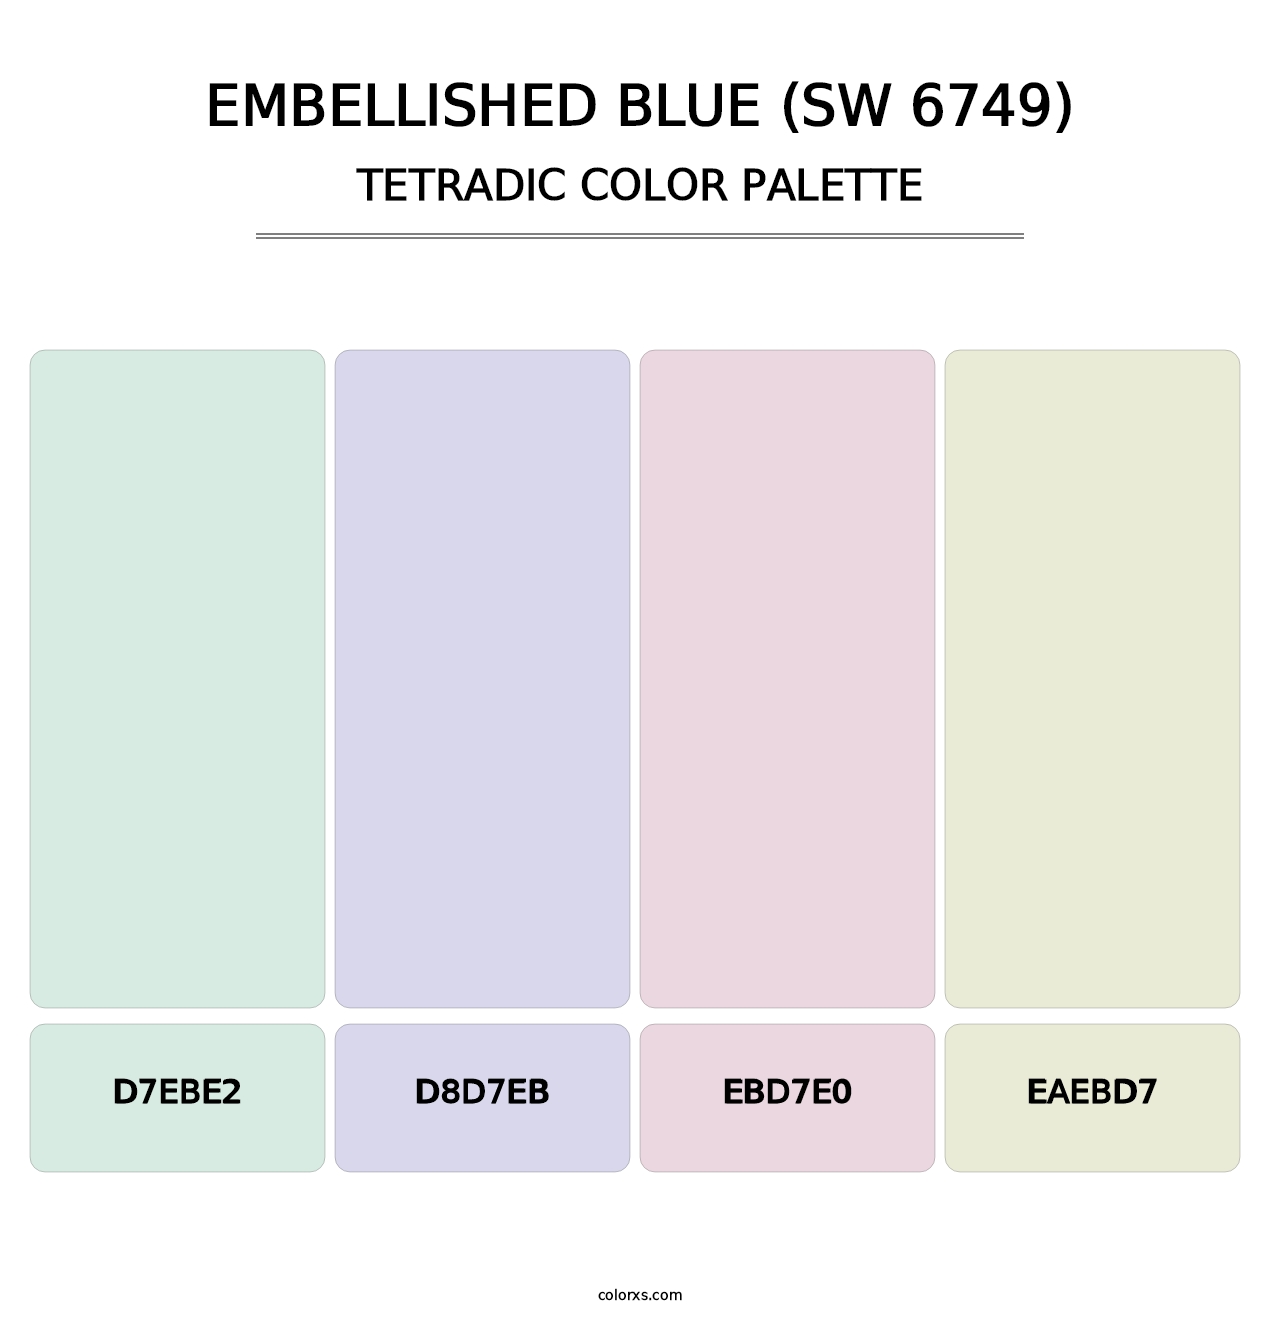 Embellished Blue (SW 6749) - Tetradic Color Palette